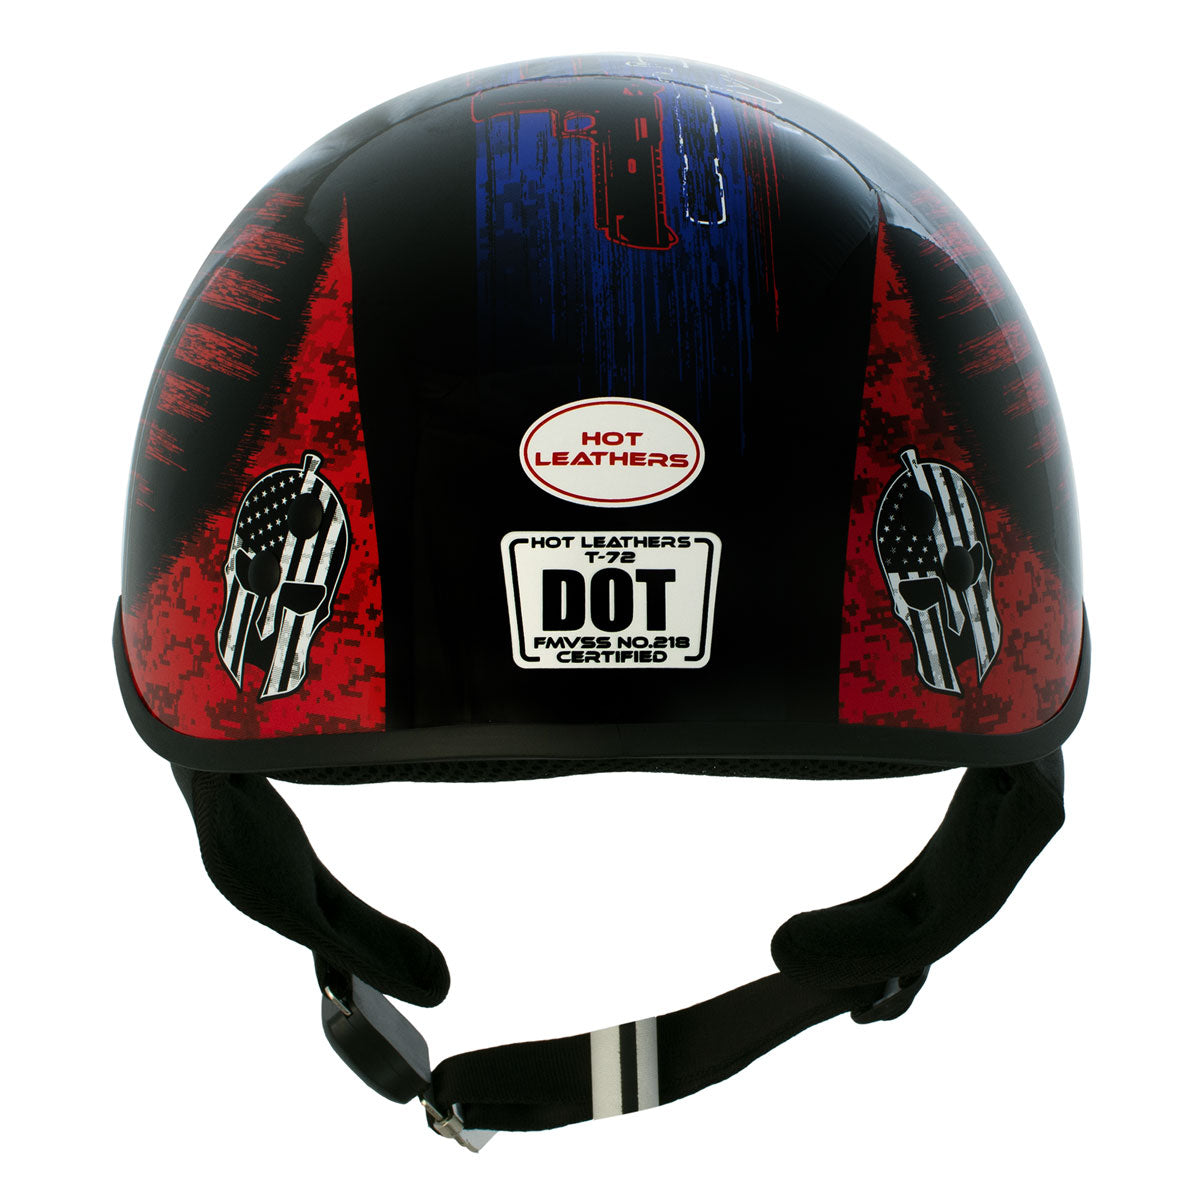 Hot Leathers HLD1044 Gloss Black 'Colored Warrior Bullet' Advanced DOT Skull Half Helmet for Men and Women Biker